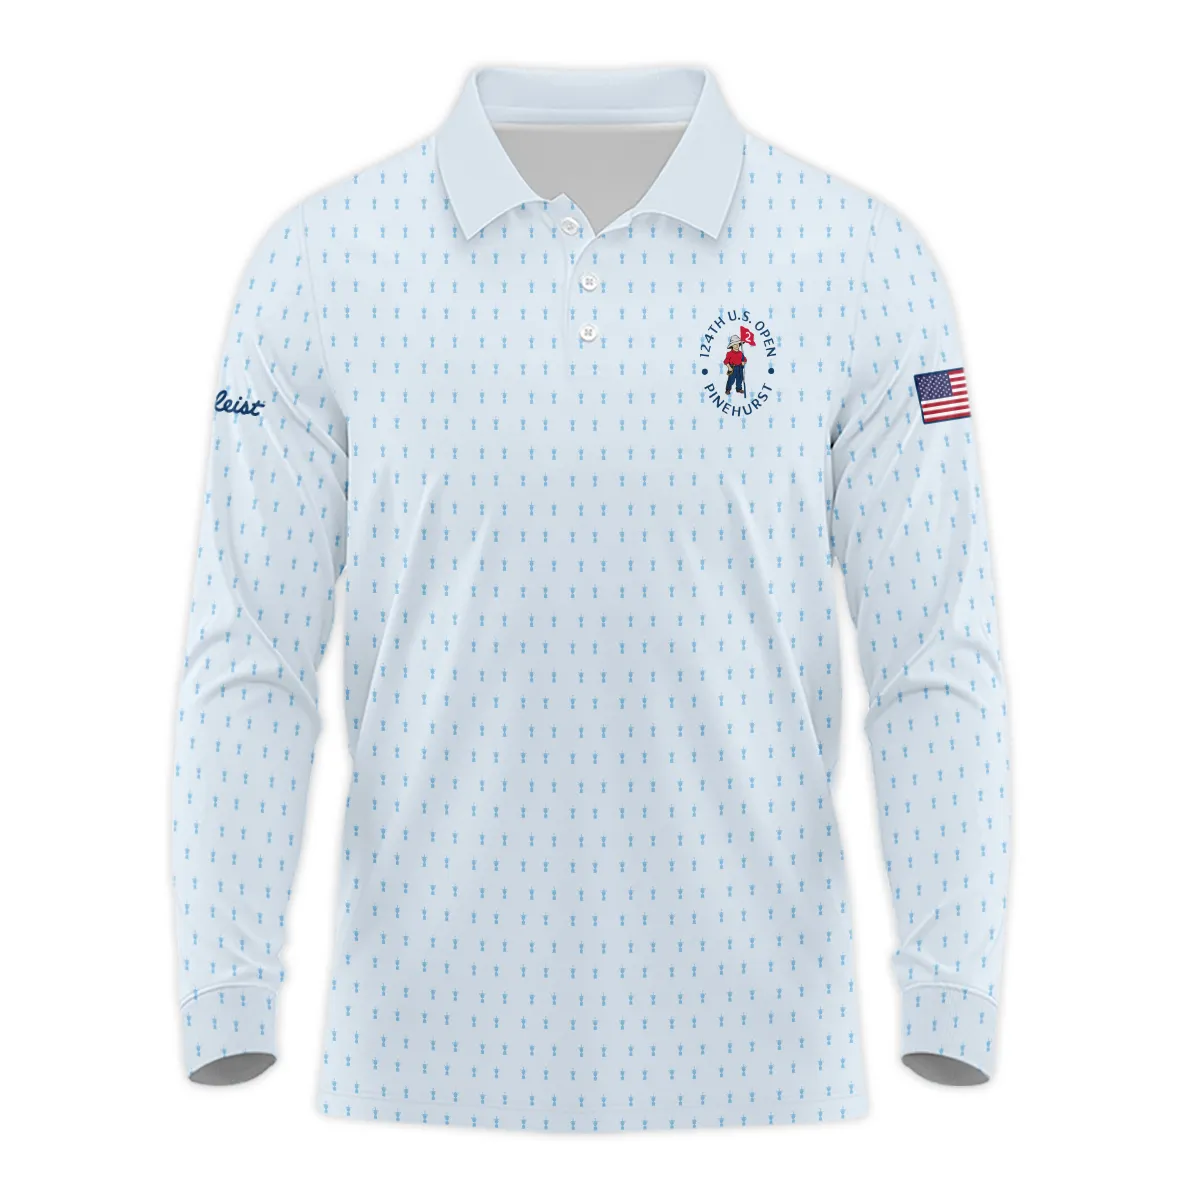 Golf Pattern Light Blue Cup 124th U.S. Open Pinehurst Titleist Zipper Polo Shirt Style Classic